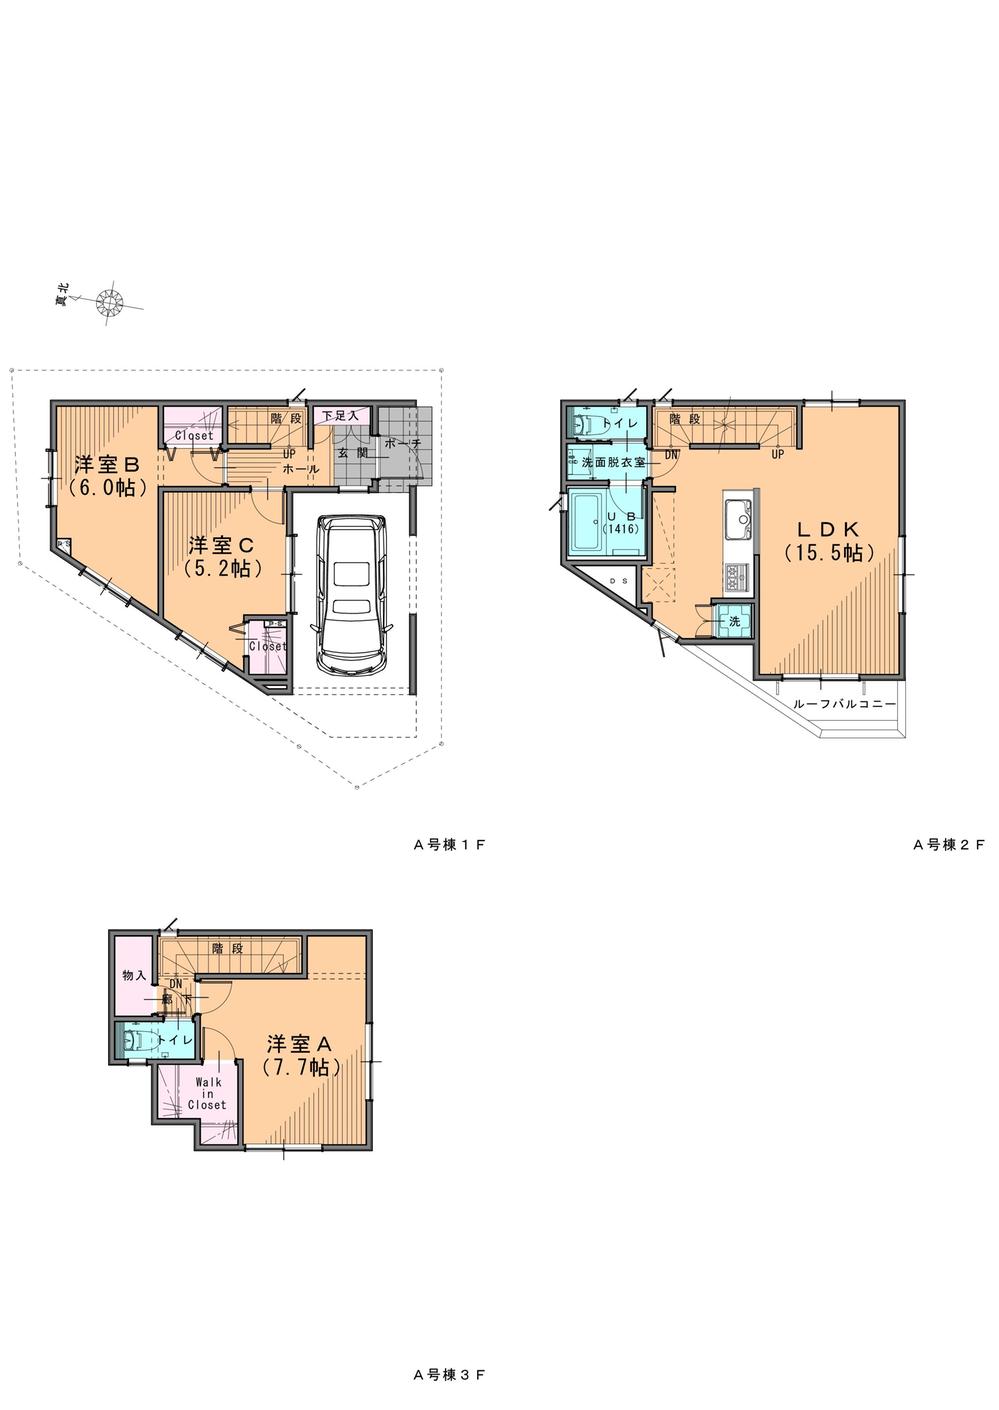 Floor plan. (A Building), Price 44,900,000 yen, 3LDK, Land area 60.4 sq m , Building area 97.54 sq m